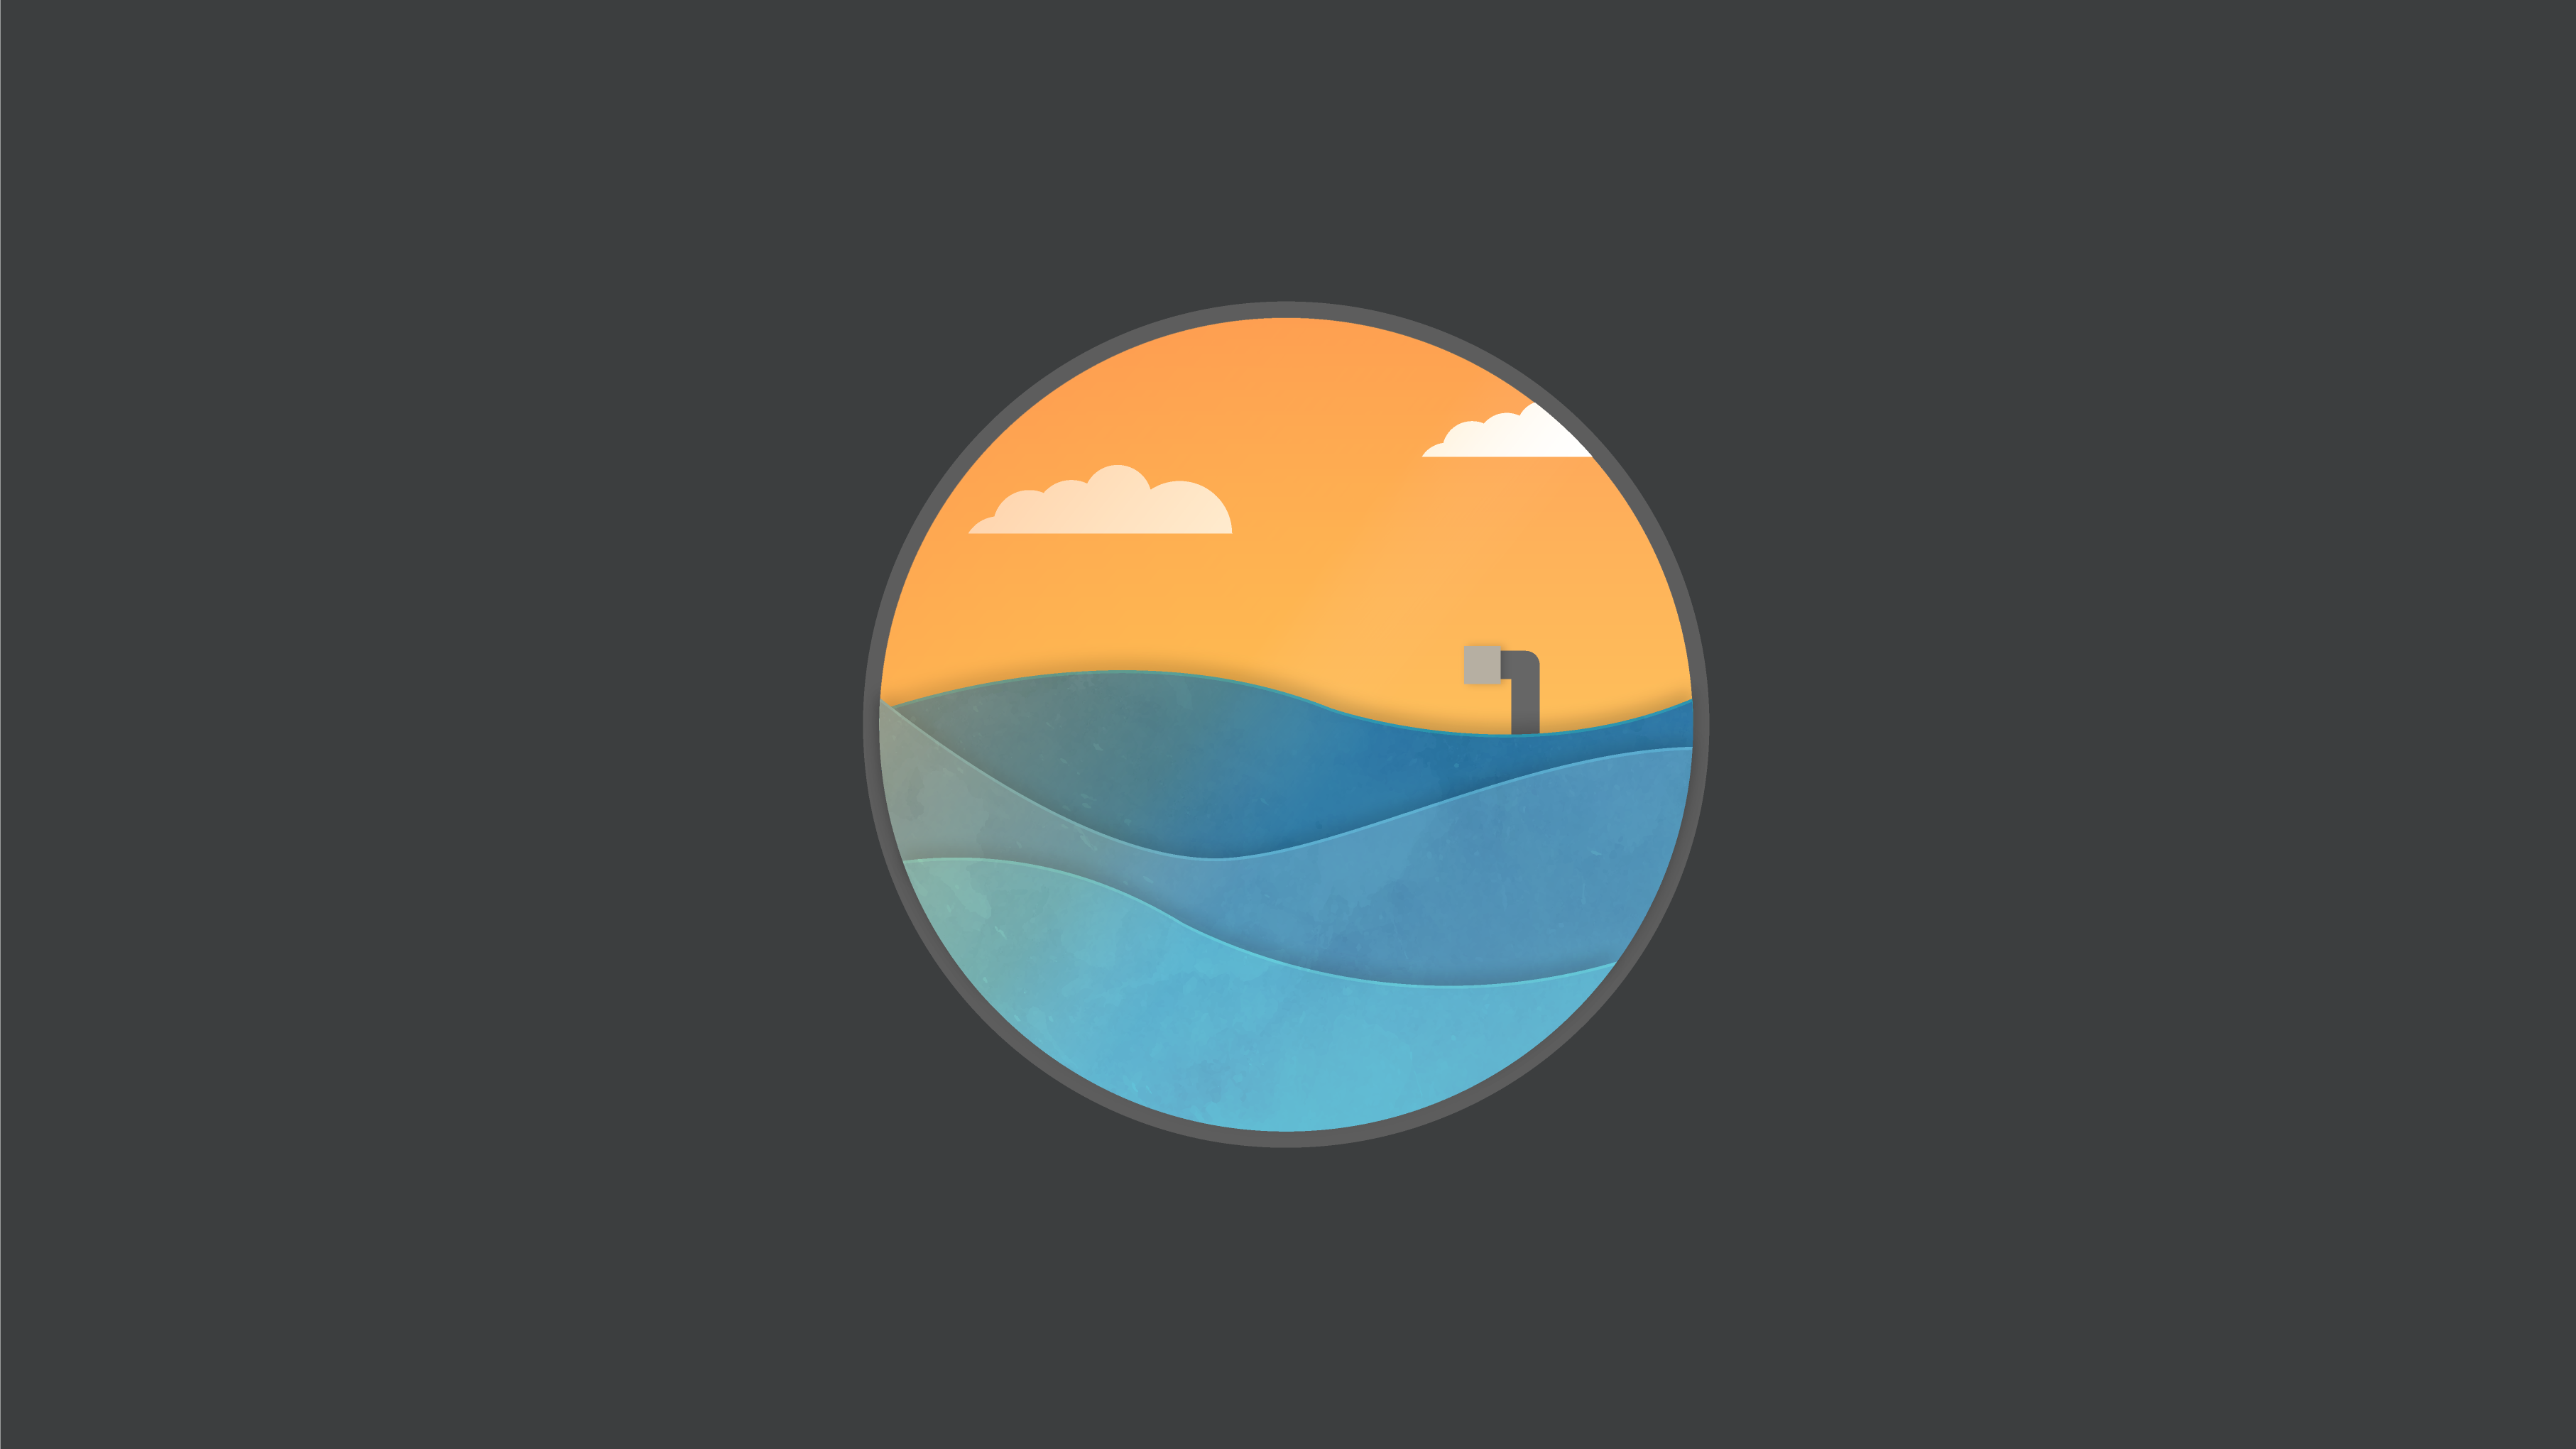 General 3628x2041 logo Flatdesign minimalism graphic design Pacific Ocean